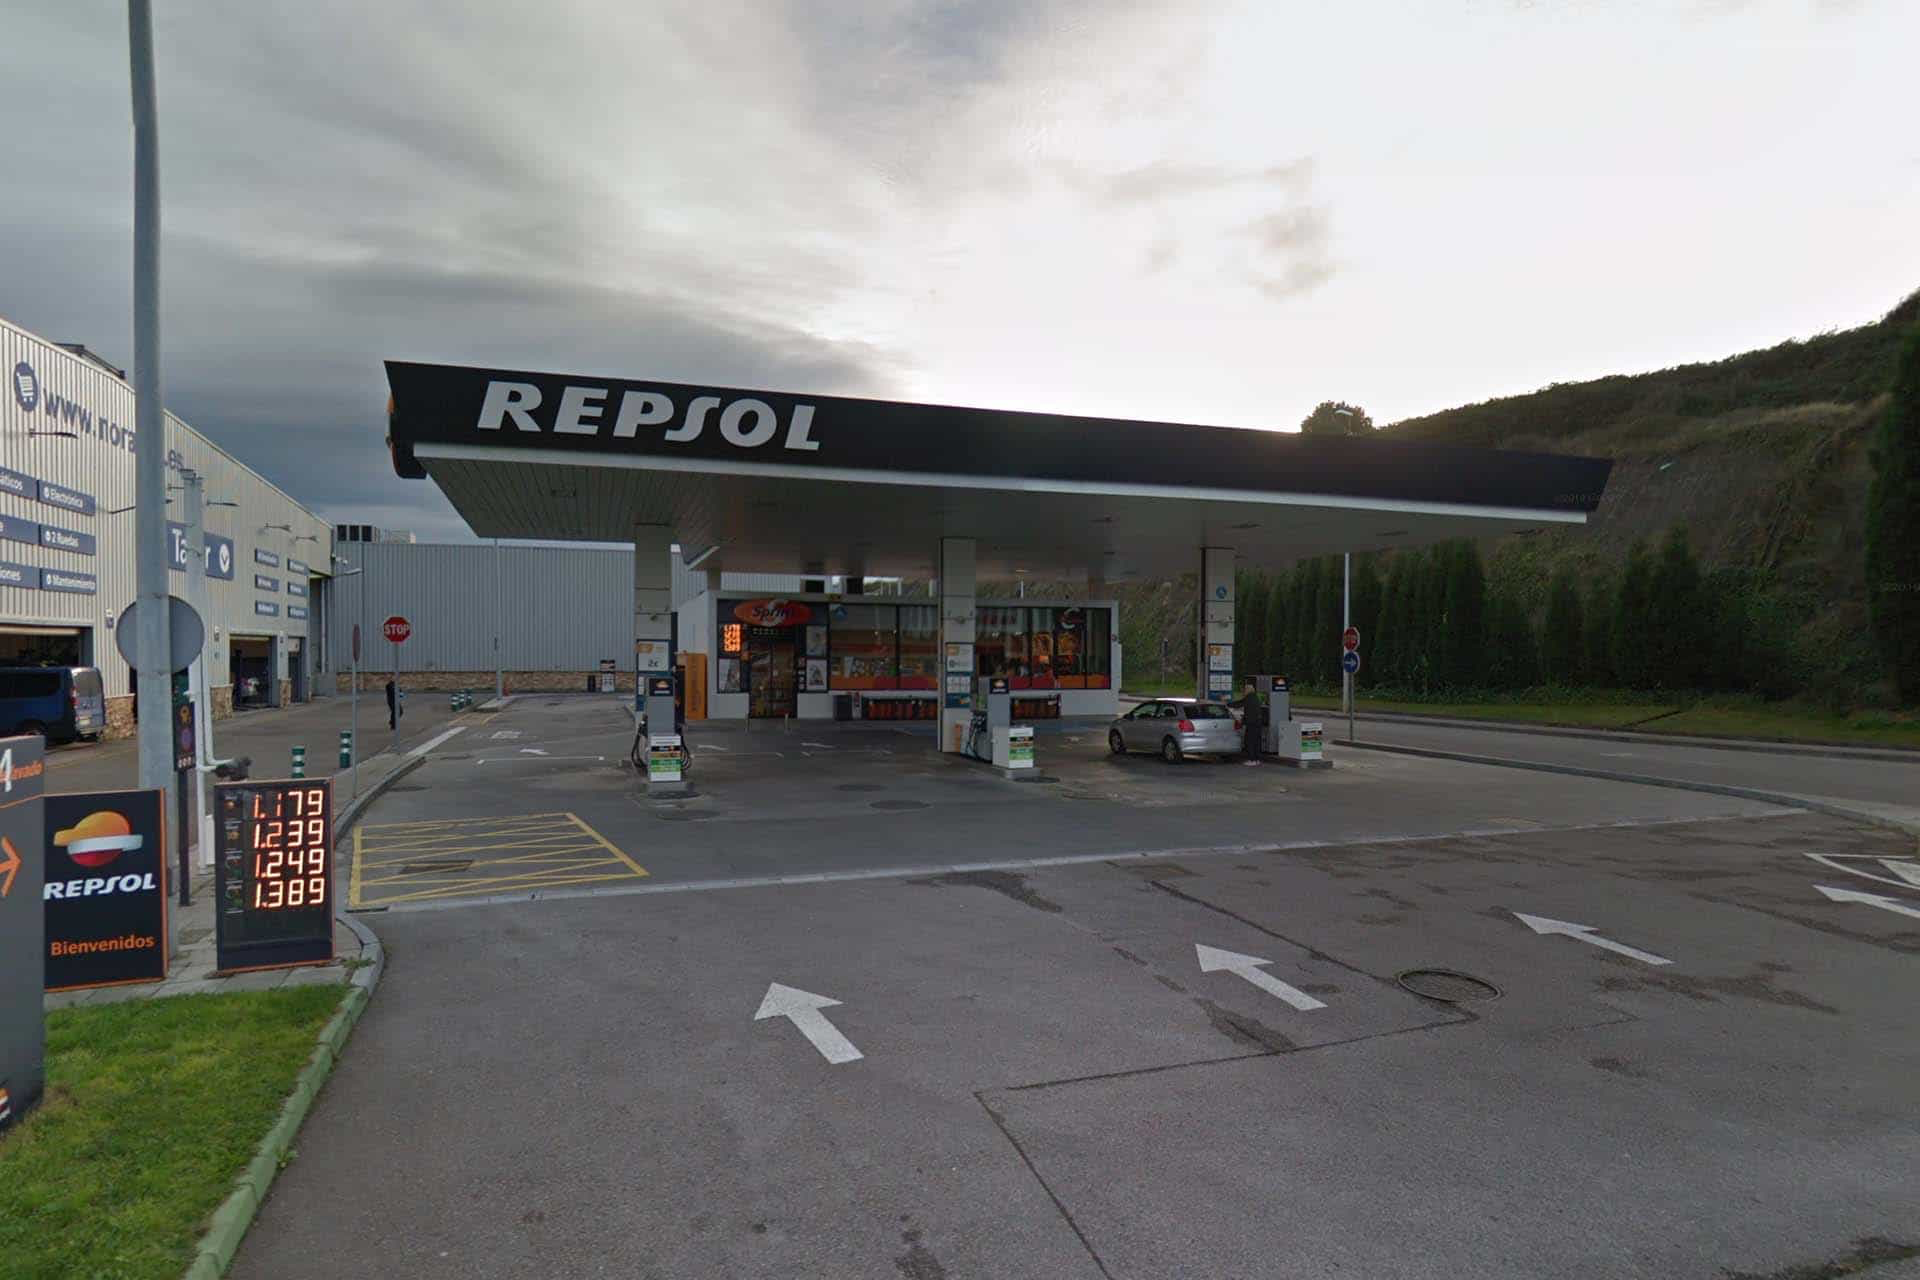 Estación de servicio Repsol en Trasmonte - Tresmonte